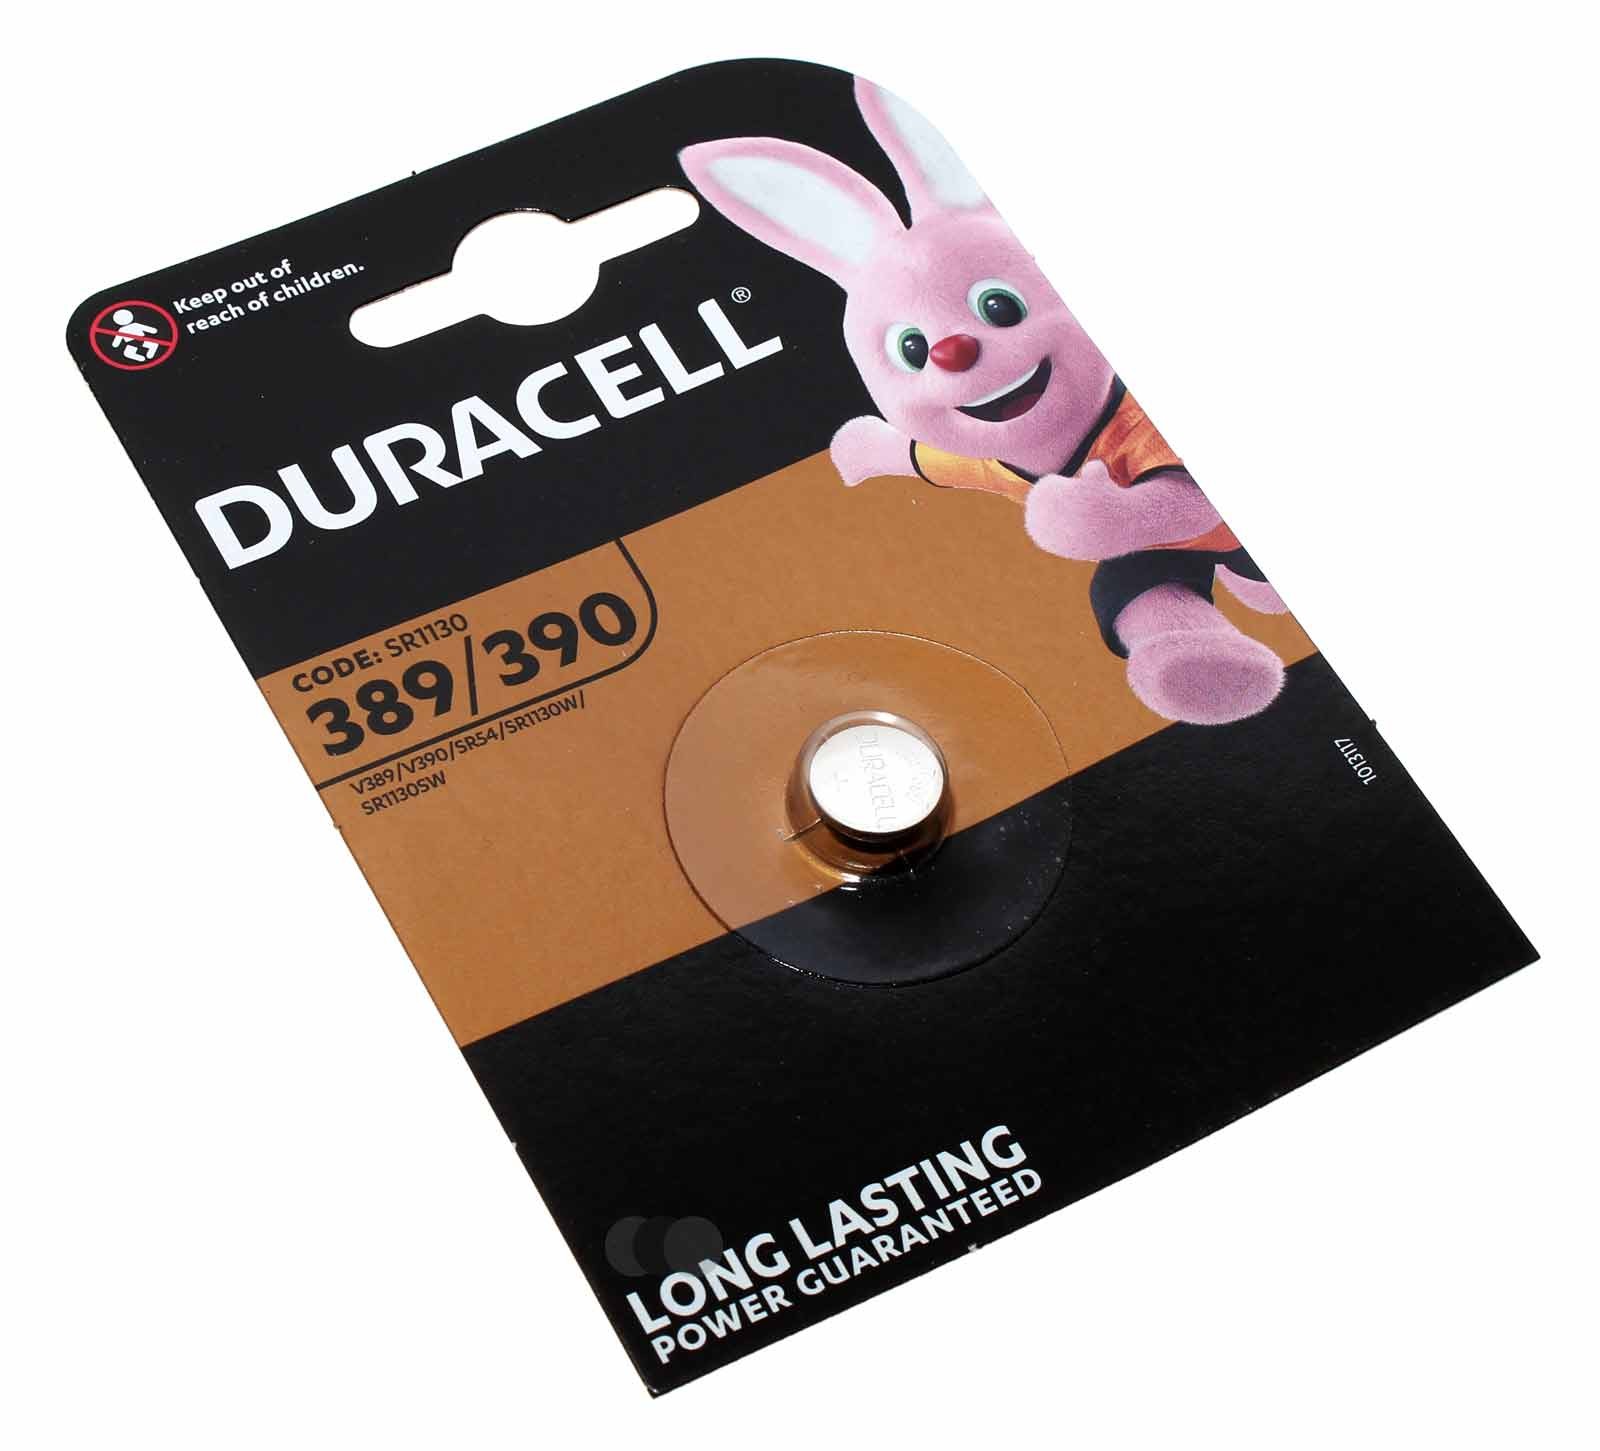 Duracell 389 / 390 Knopfzelle Batterie Silberoxid für Uhren u.a., wie SR 54, SR1130, 1,55V, 80mAh